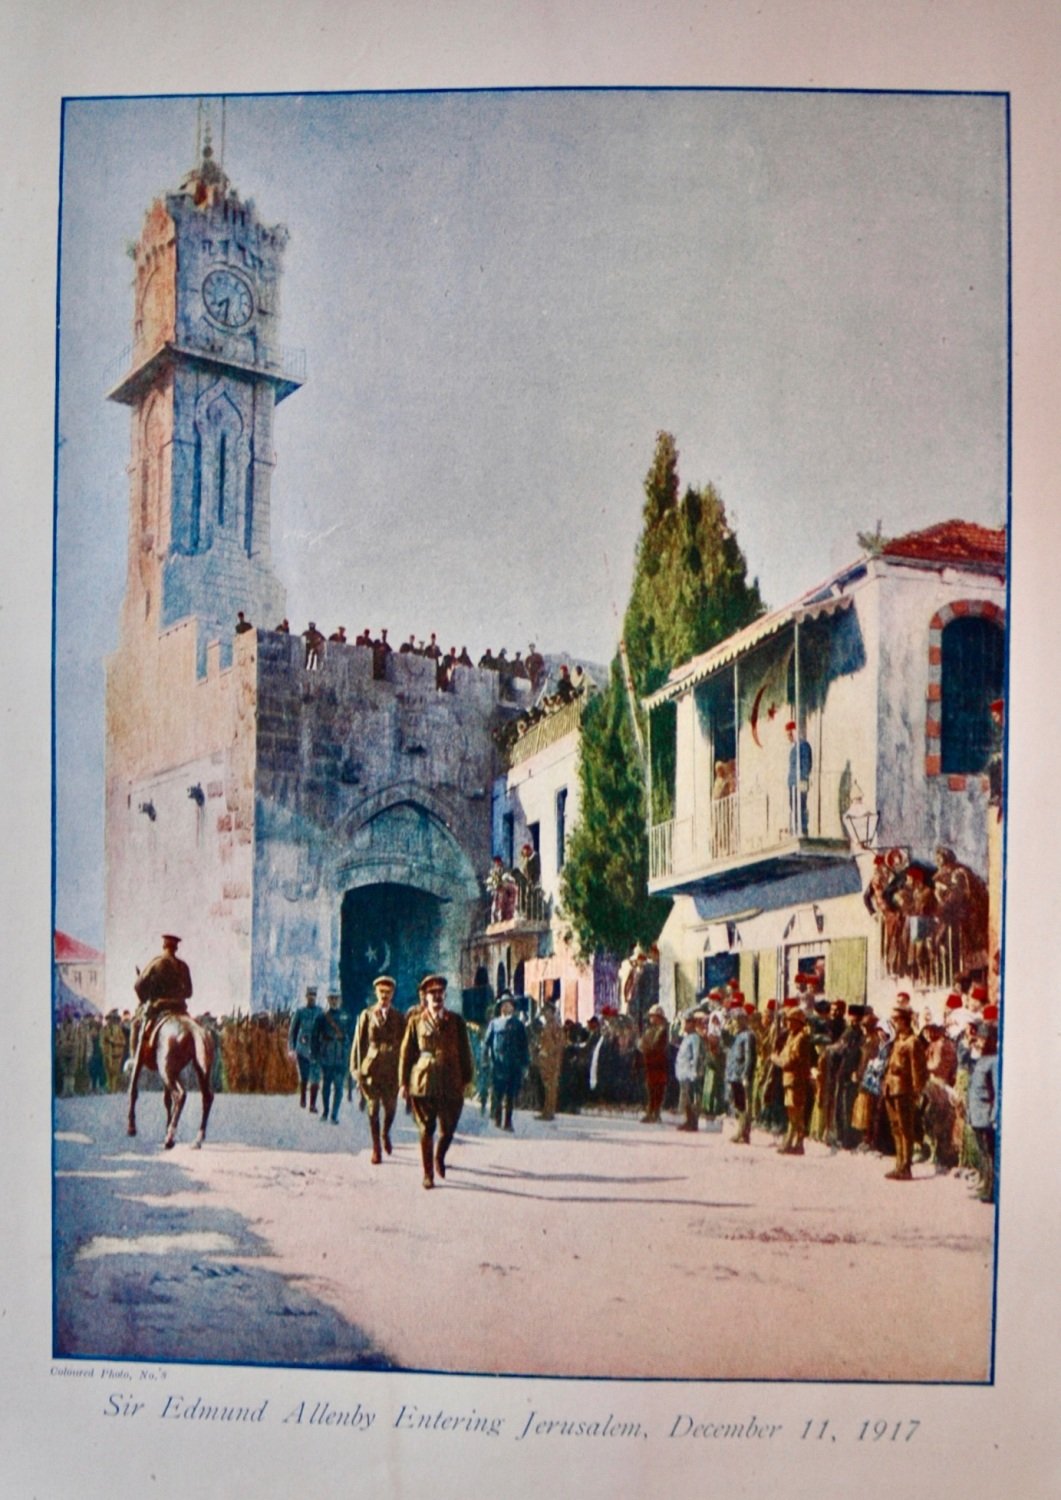 Sir Edmund Allenby Entering Jerusalem, December 11, 1917.   (1914 - 1918 Wa